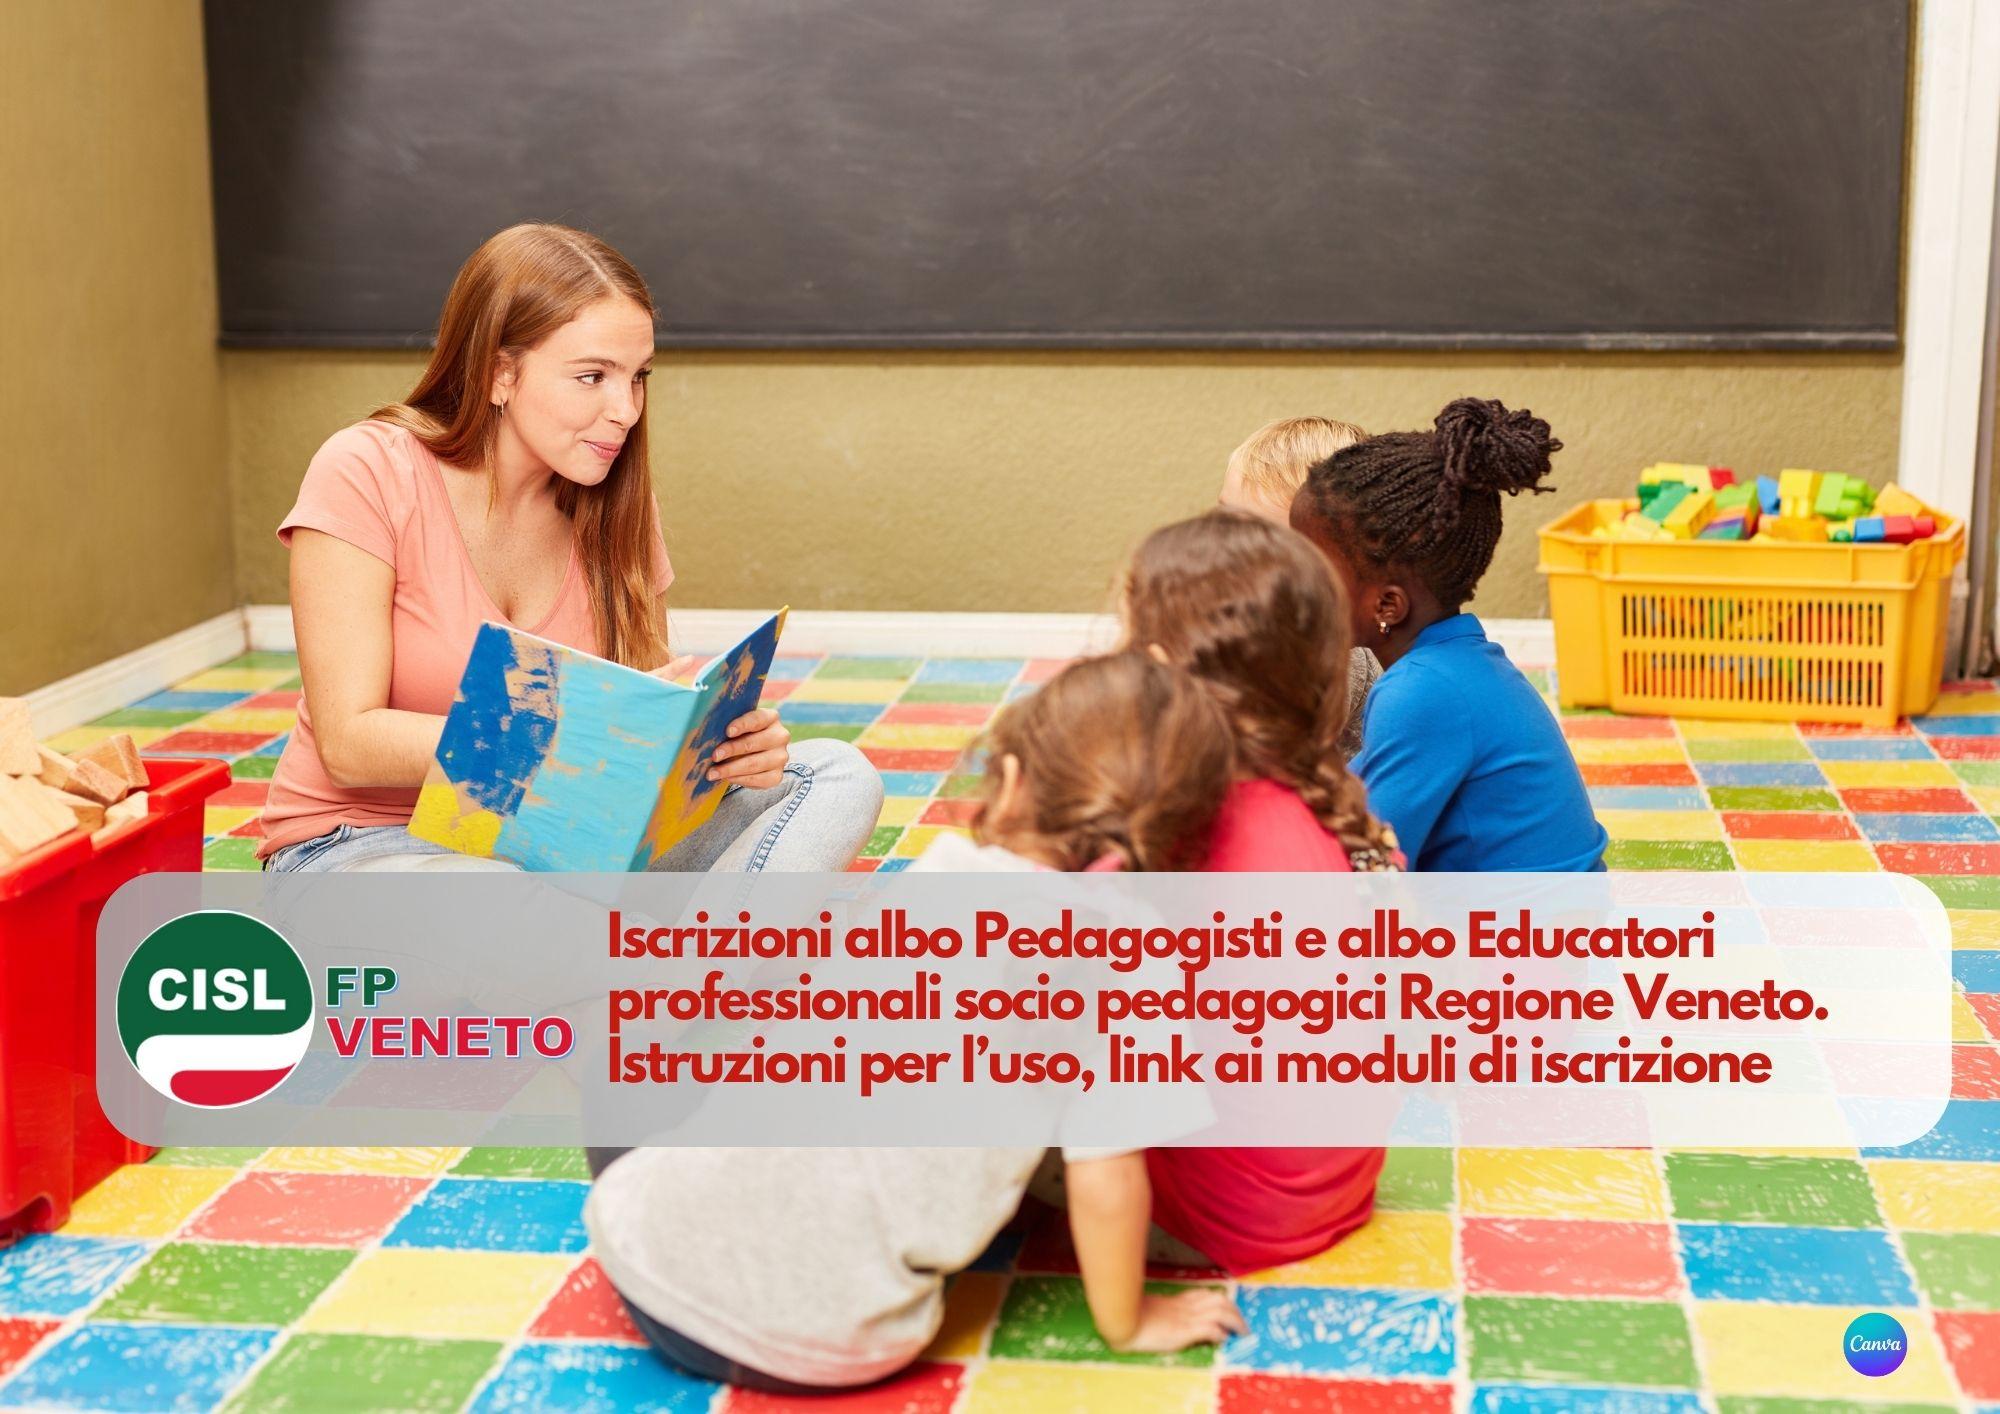 CISL FP Veneto. Iscrizioni albo Pedagogisti e albo Educatori professionali socio pedagogici